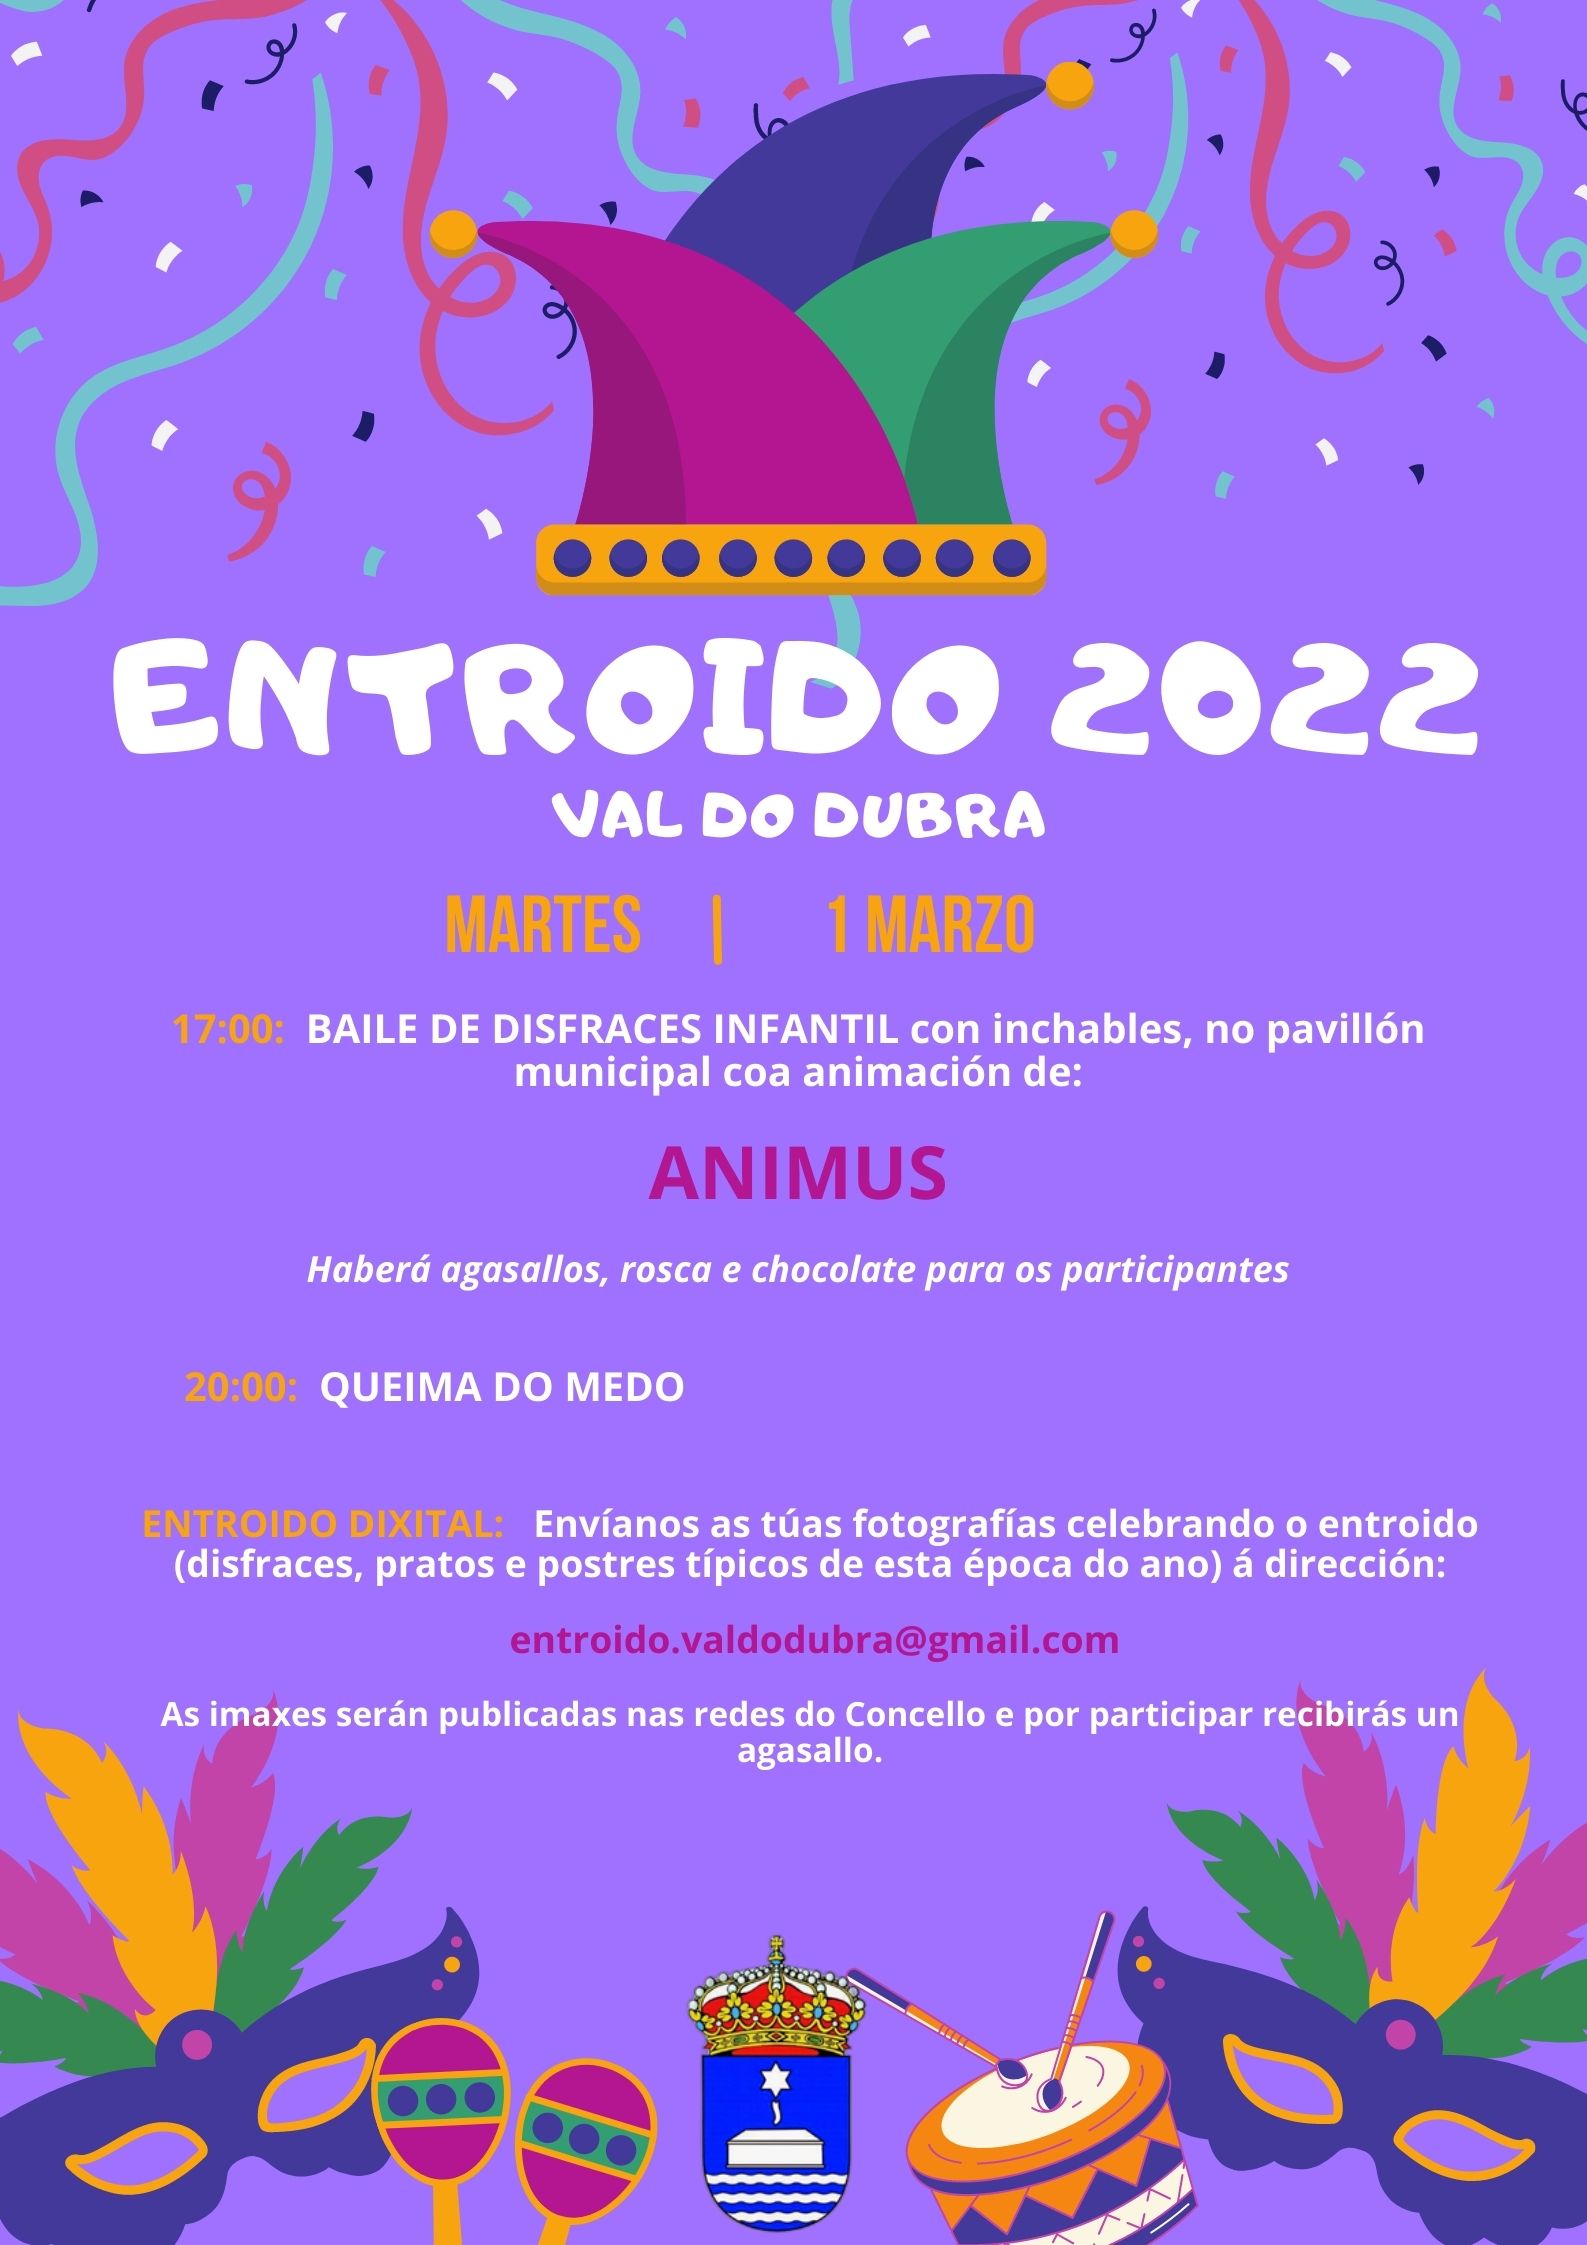 ENTROIDO 2022